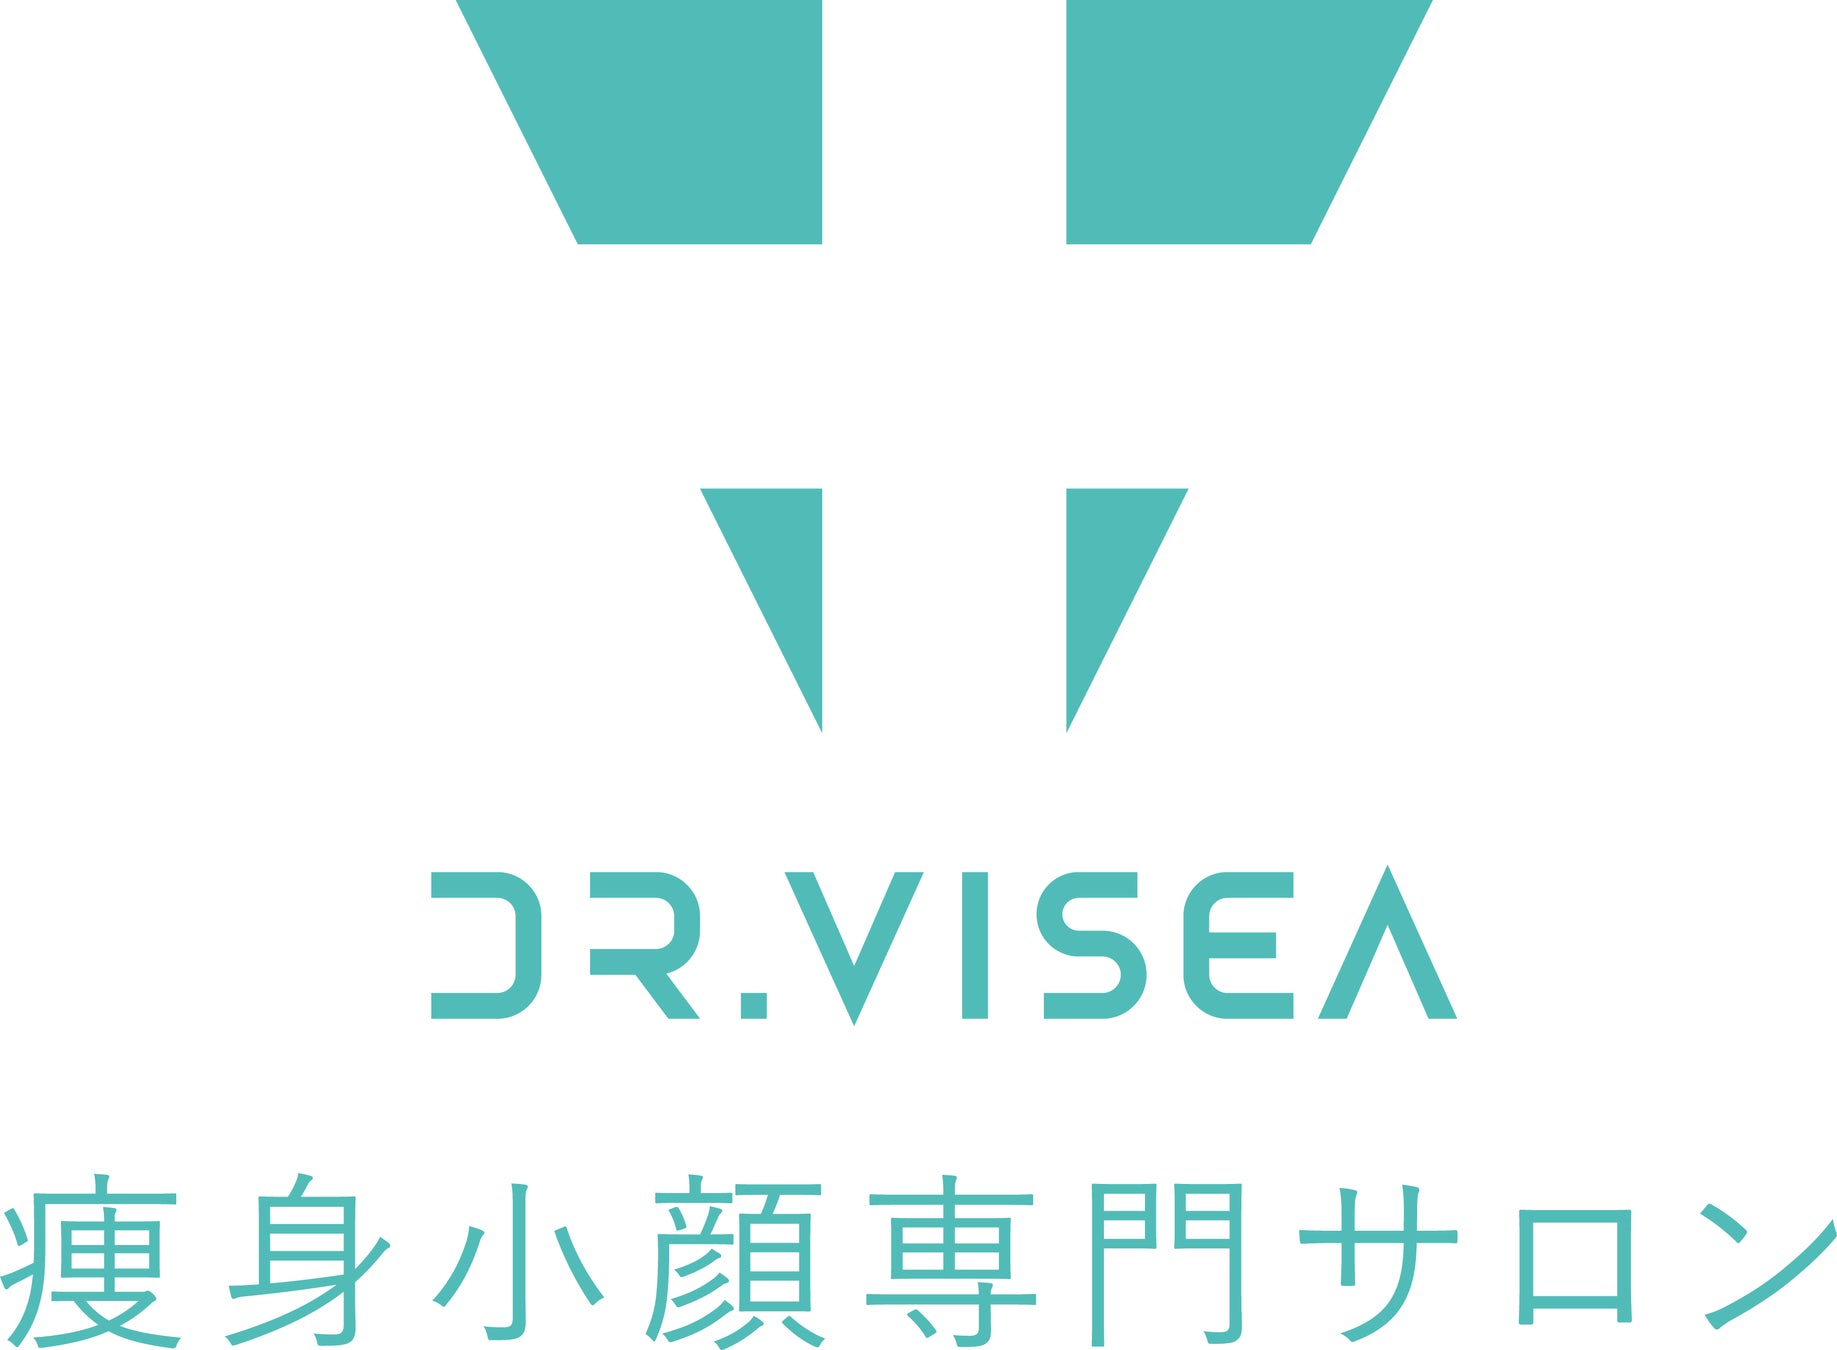 株式会社Dr.Visea直営サロン名変更と新たな取り組みのサブ画像1